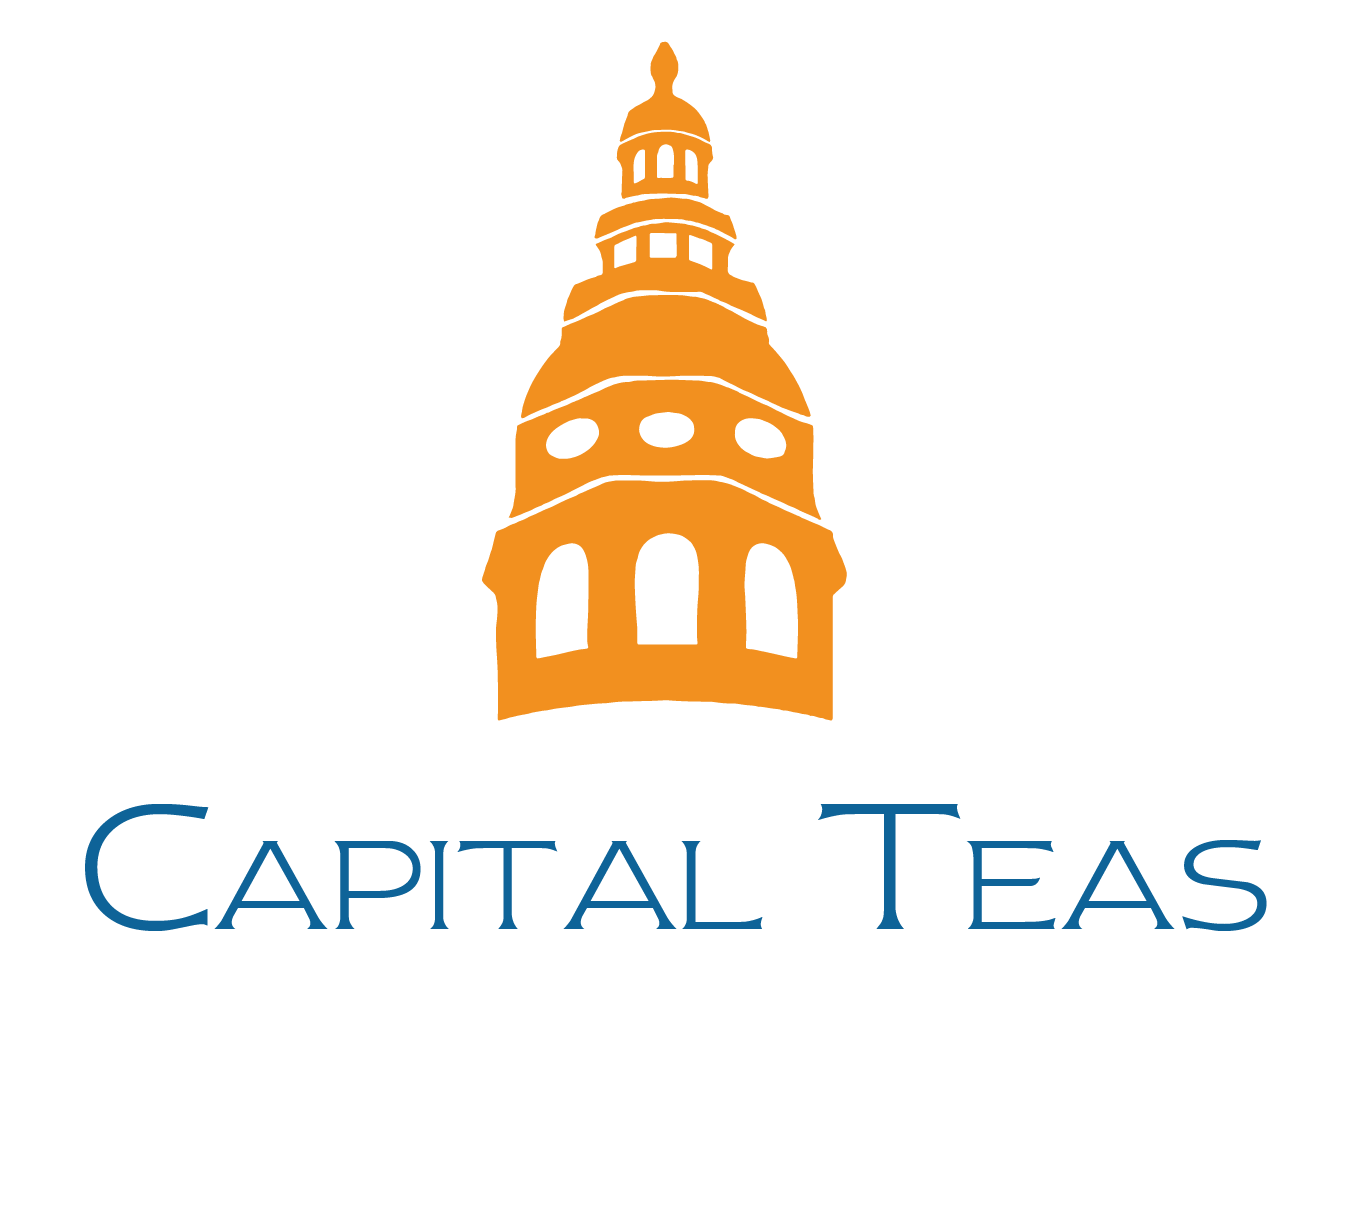 2021-Capital Teas-Logo-COLOR-01 - Peter Martino